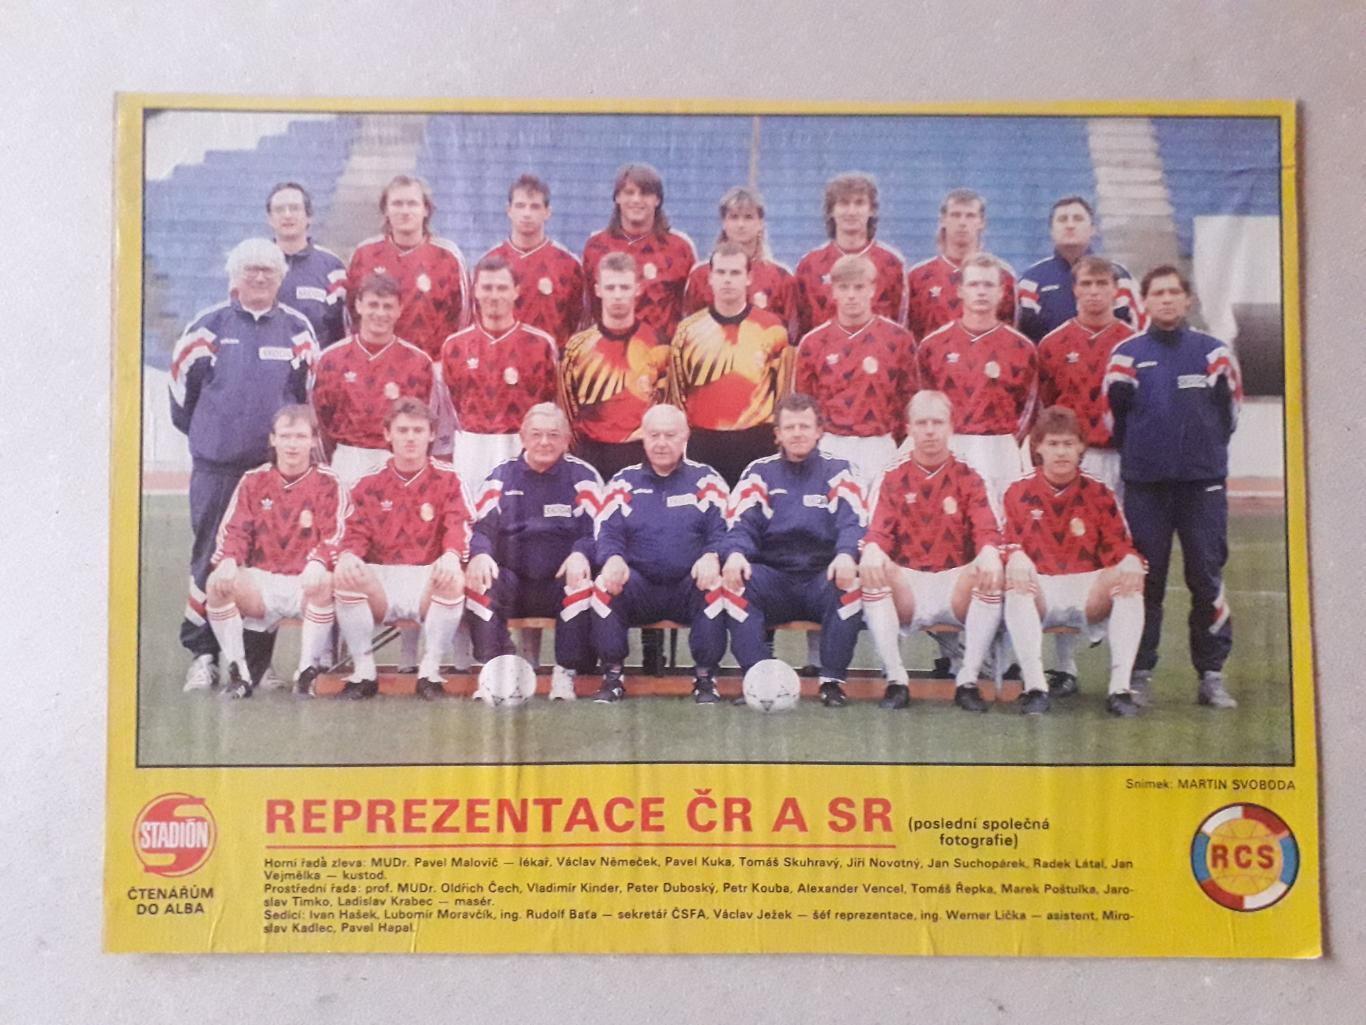 Плакат из журнала Stadion- Czechoslowakia